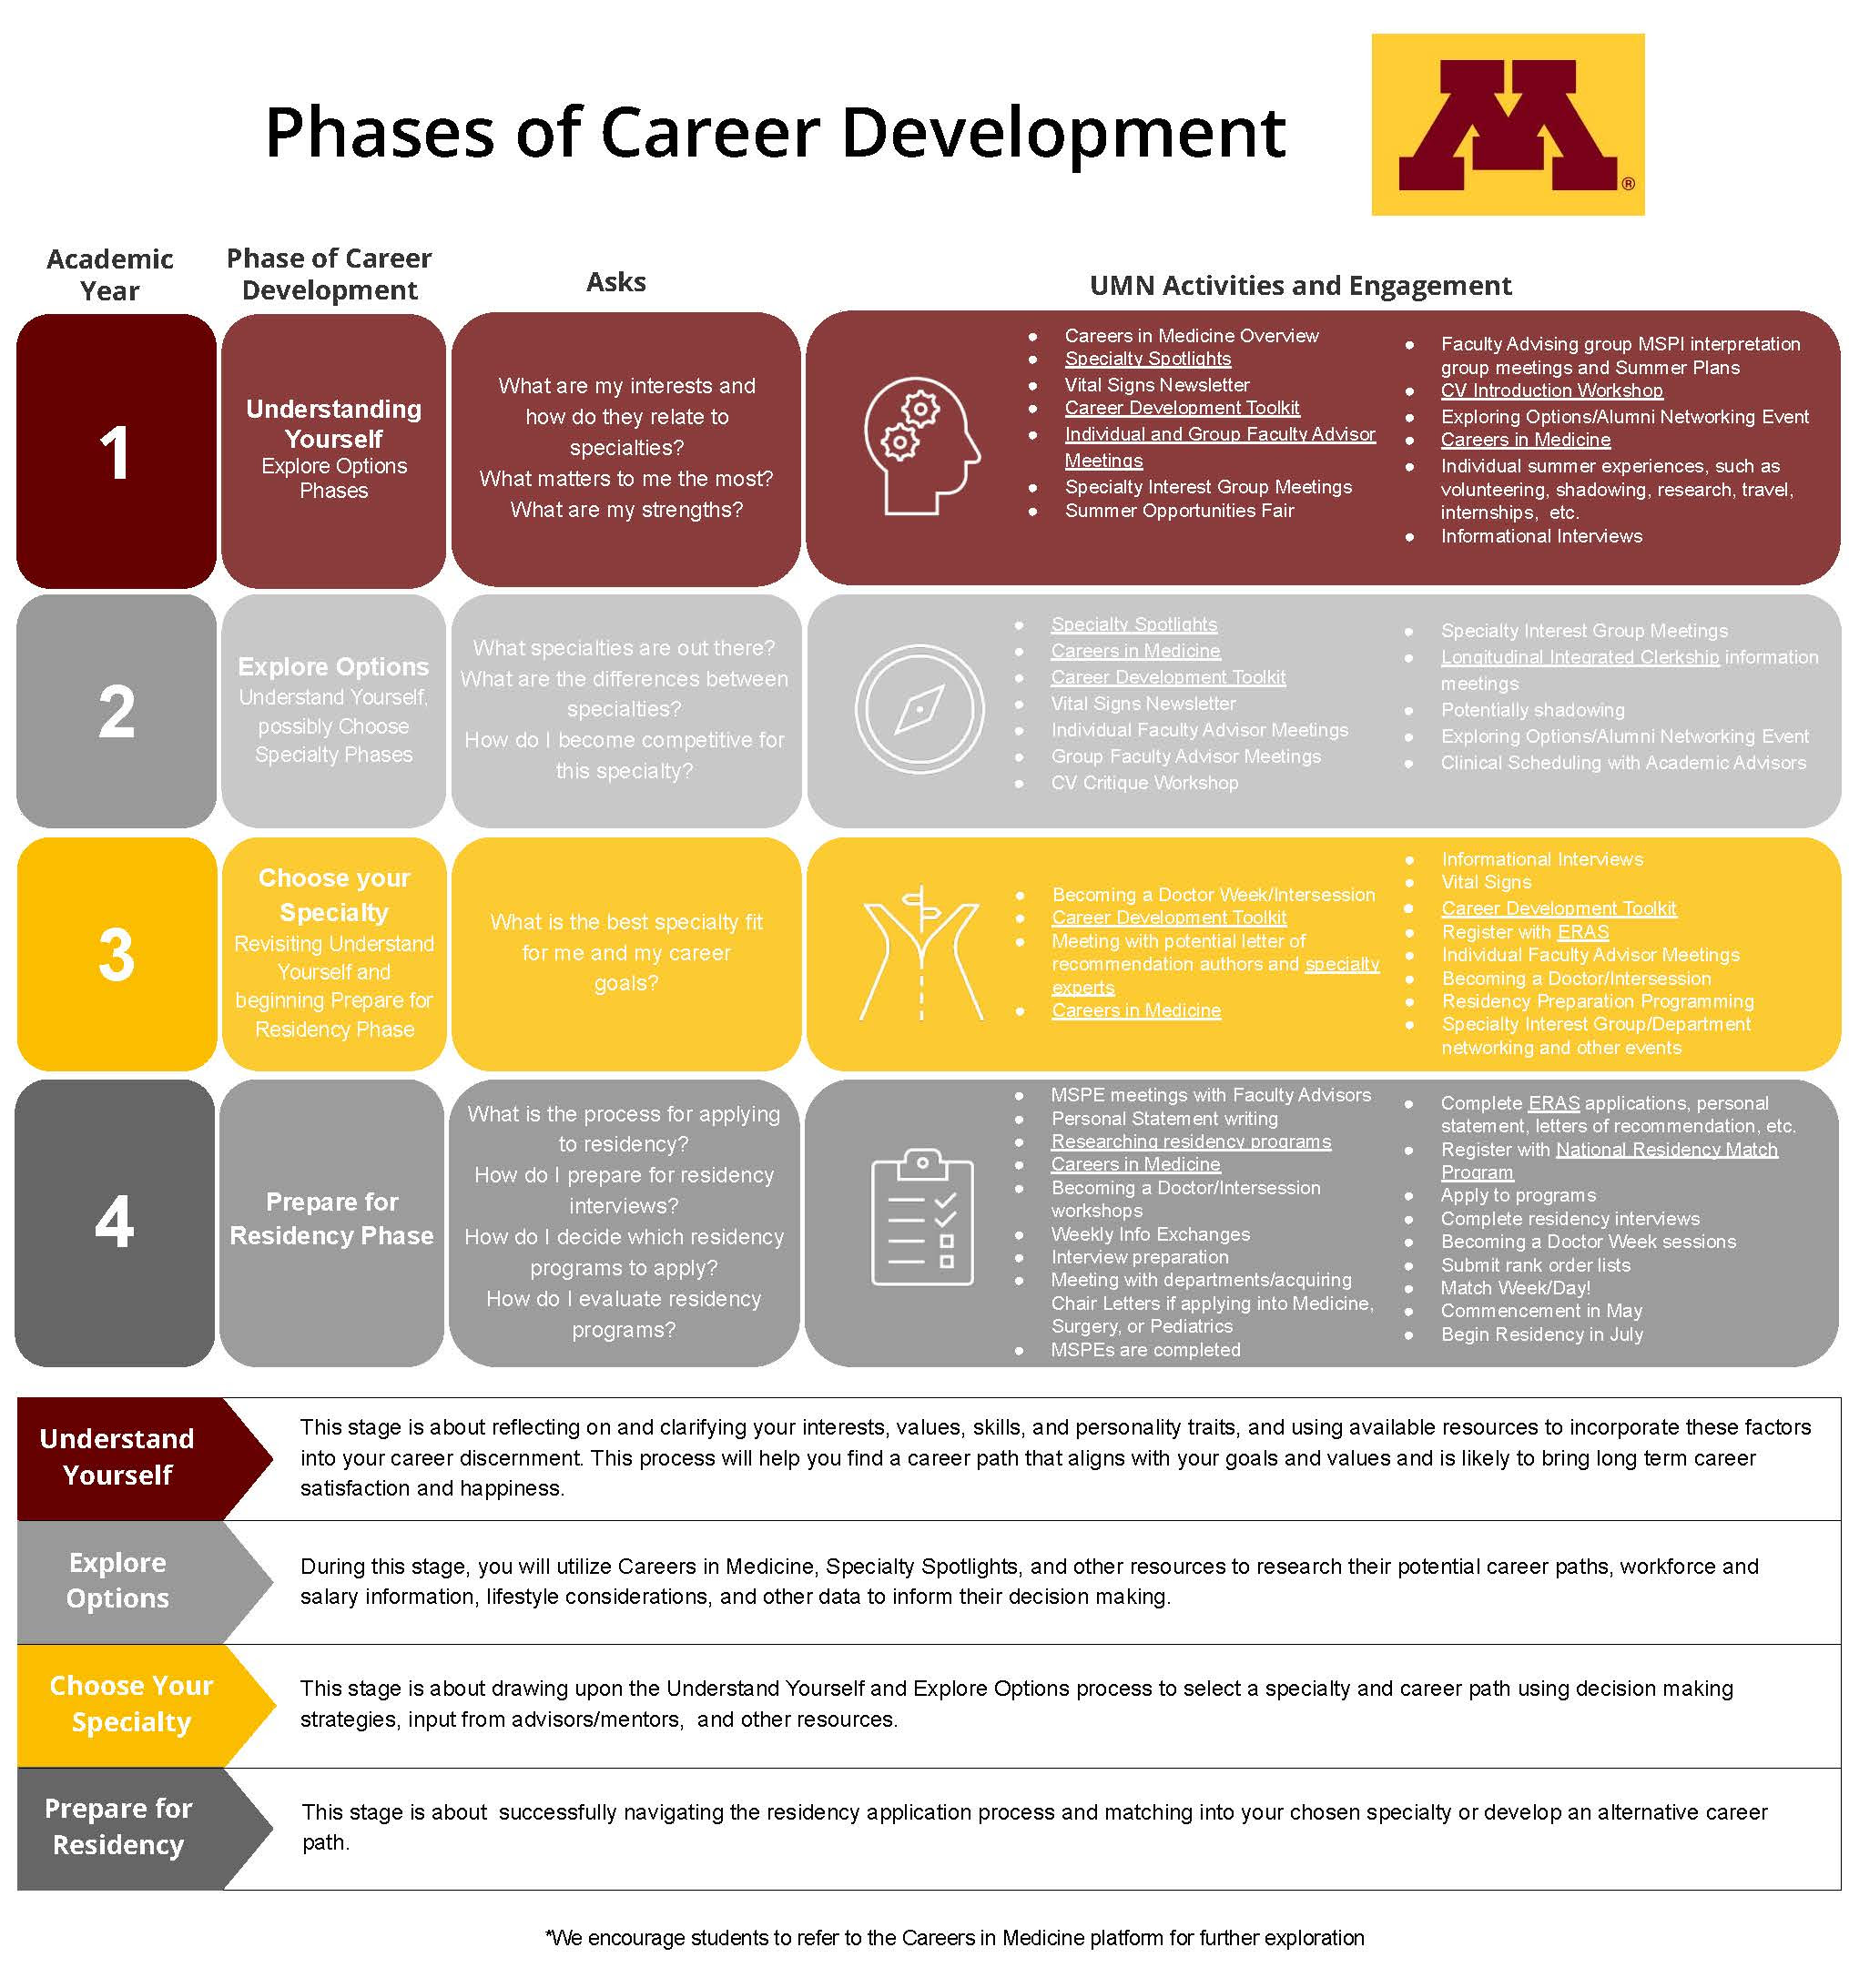 Phases of Career Development